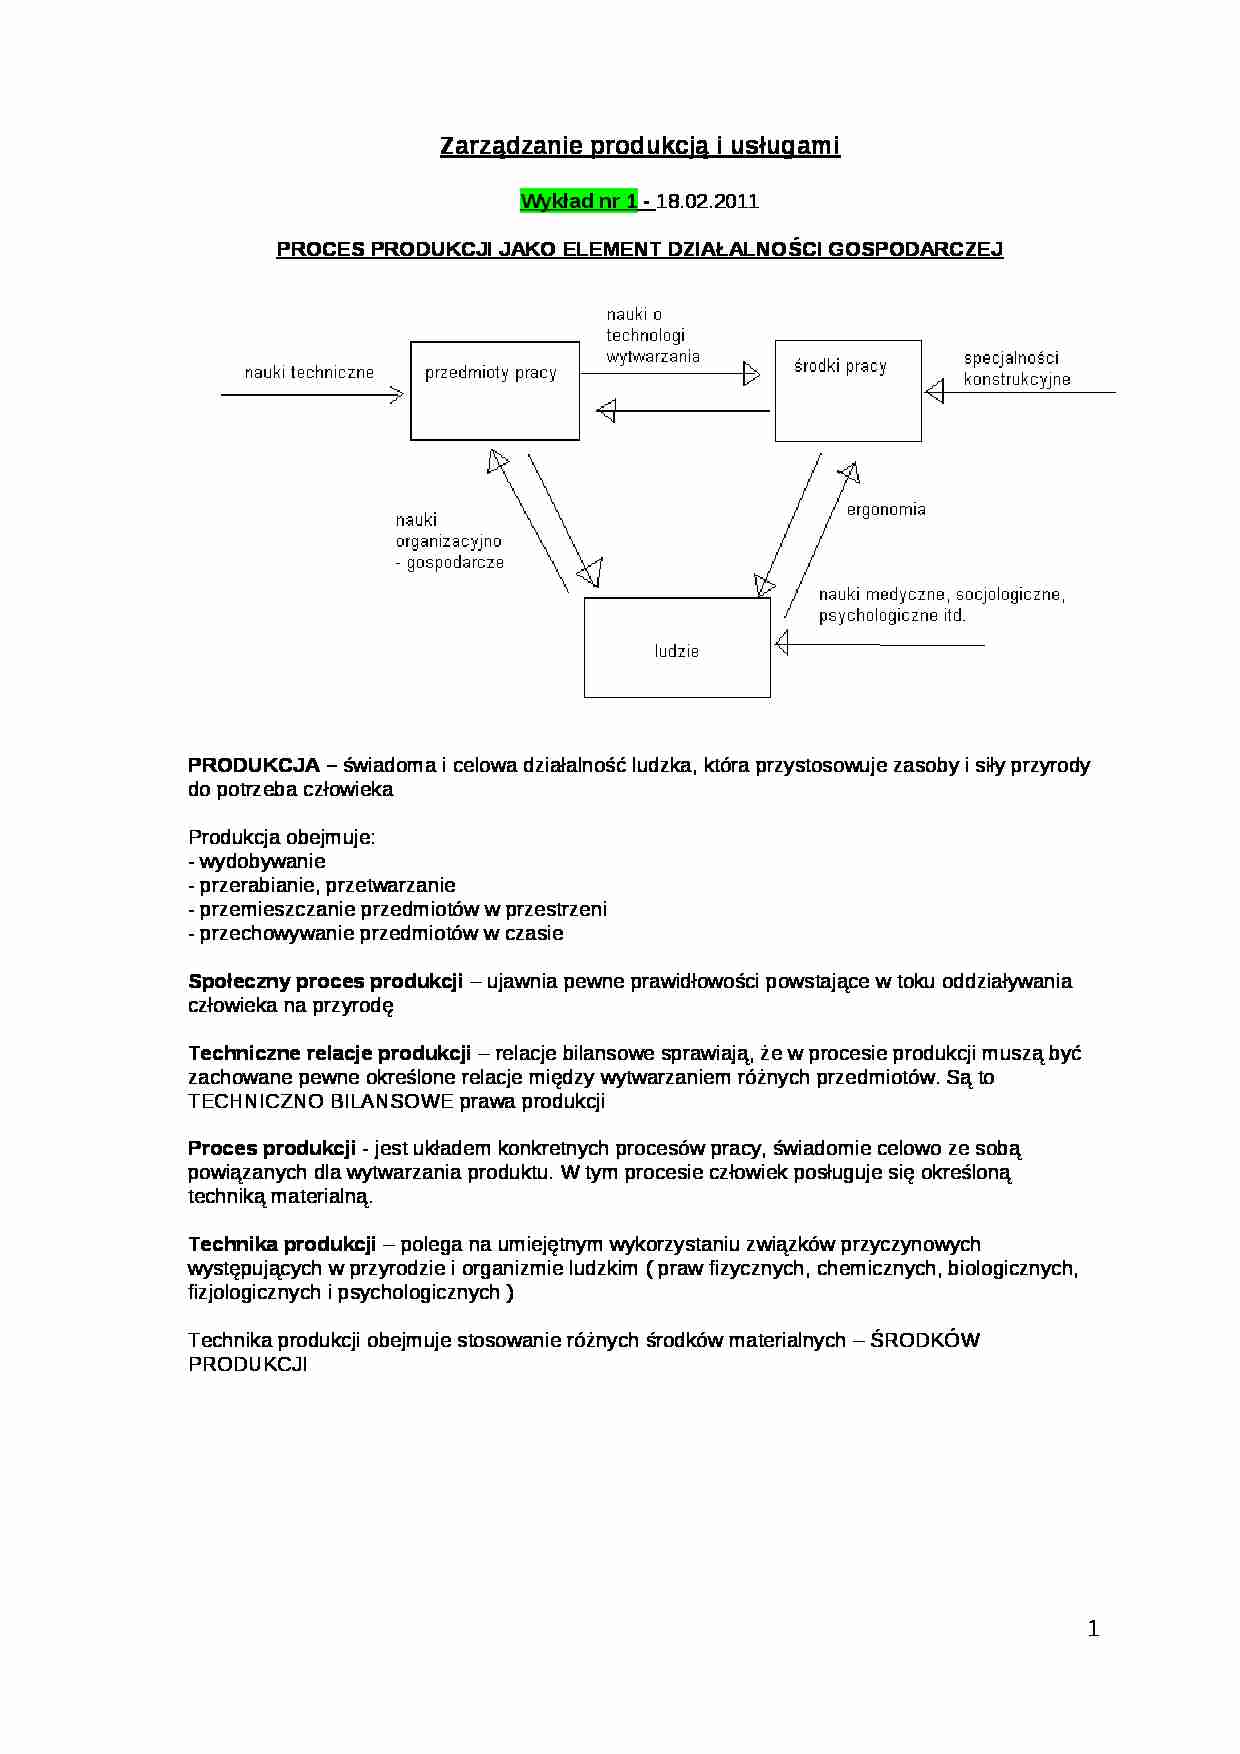 Zarządzanie produkcją i usługami - Marek Janusz - strona 1